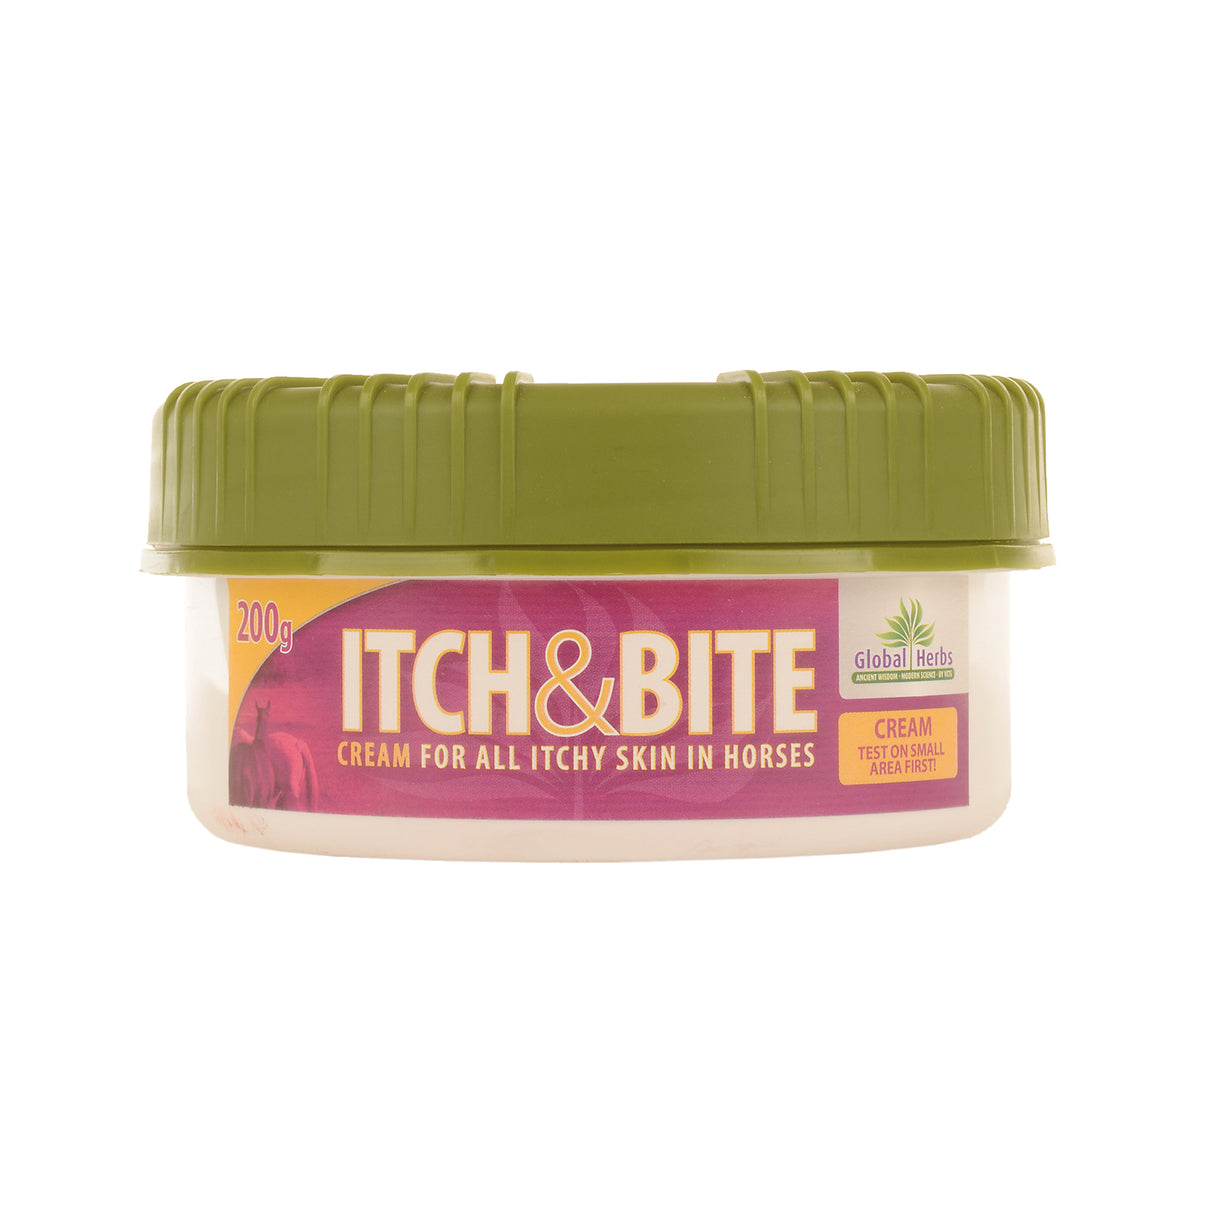 Global Herbs Itch & Bite Cream